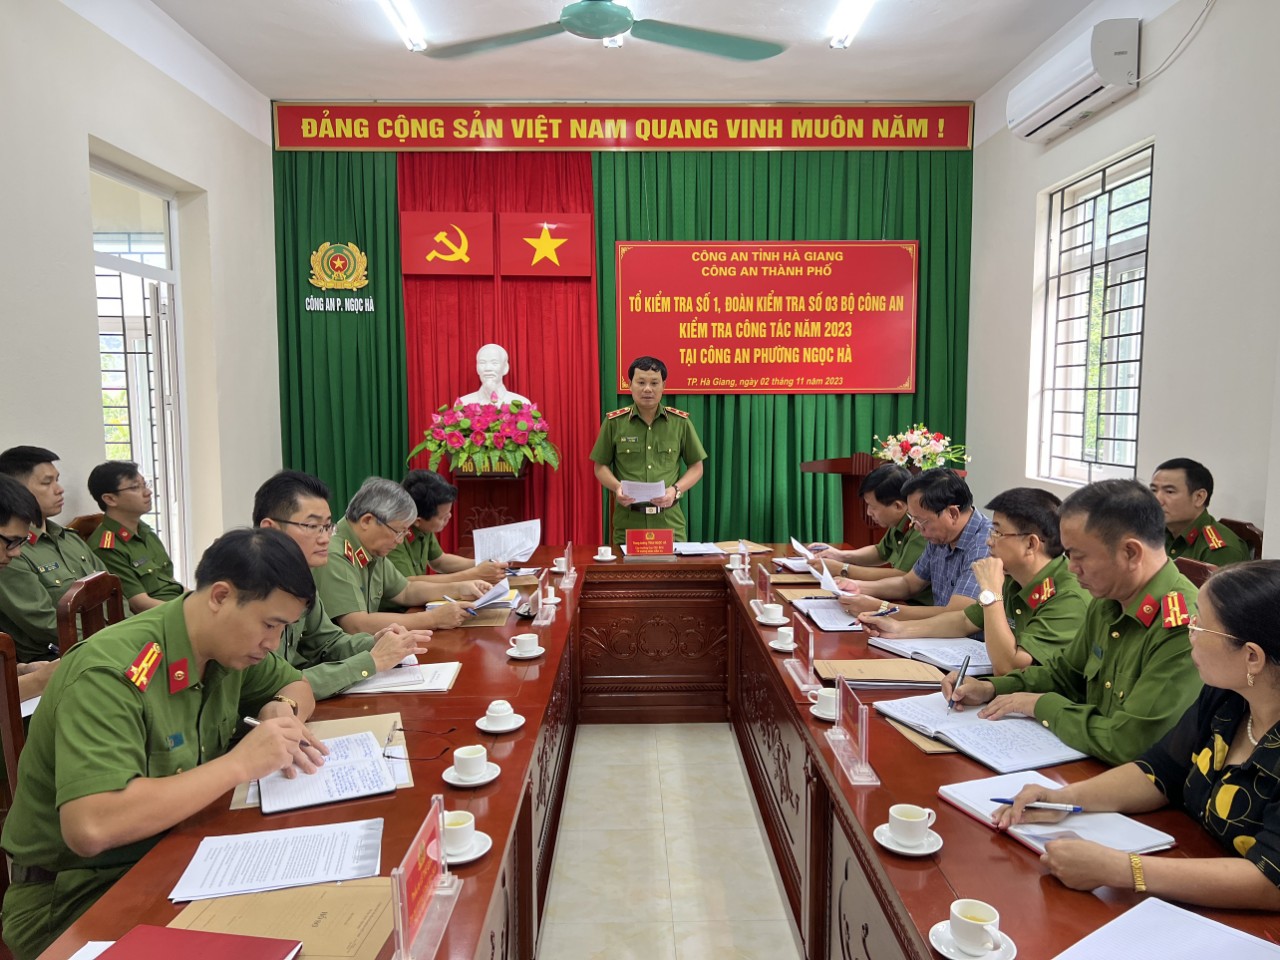 Trung tướng Trần Ngọc Hà, Cục trưởng Cục Cảnh sát hình sự Bộ Công an làm việc tại Công an phường Ngọc Hà